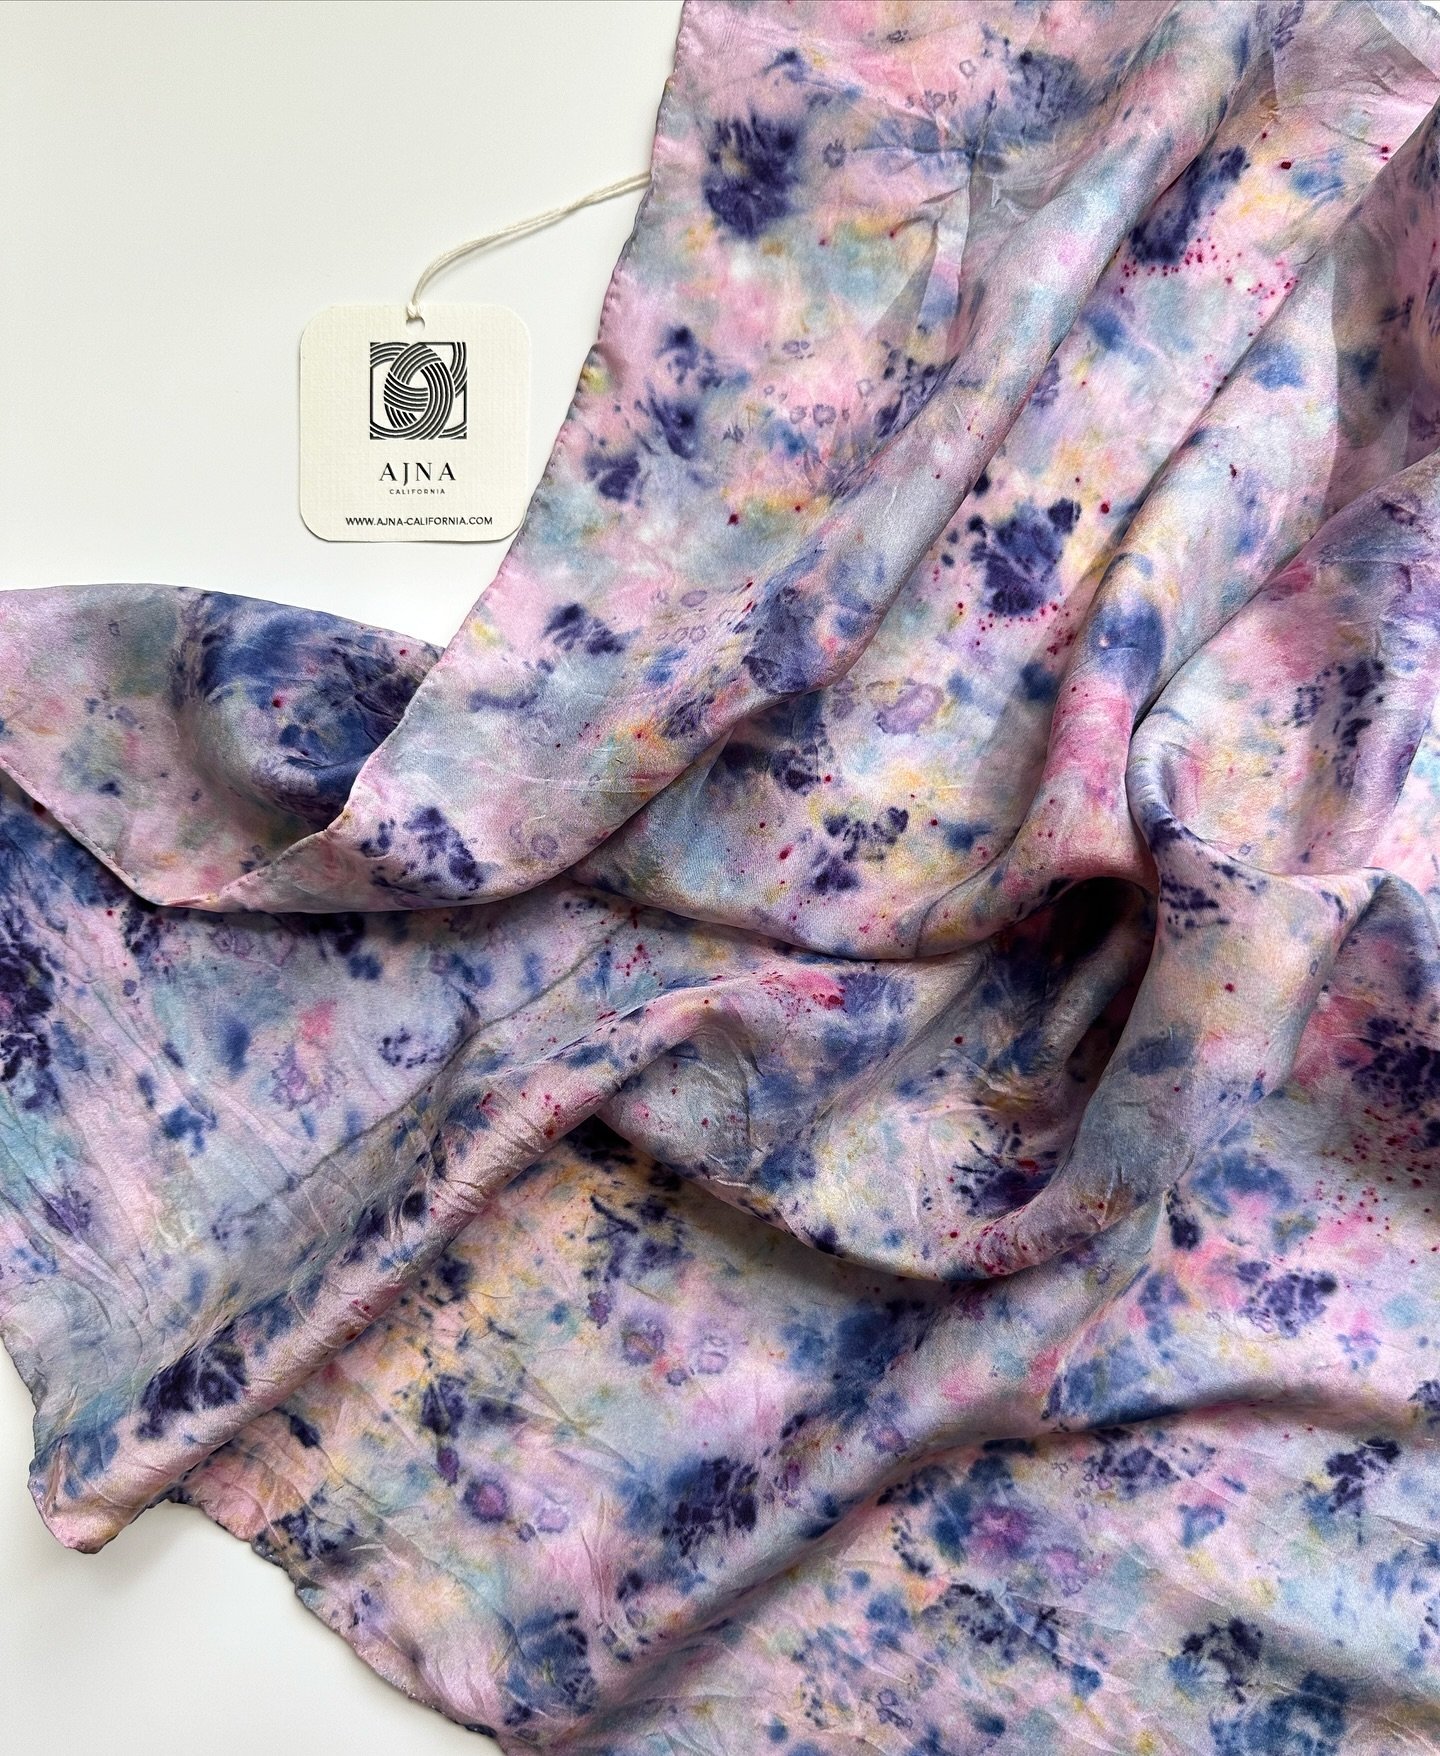 Sweet spring🪻 
Botanically dyed silk scarf 

#botanicallydyed #oneofakind #ajnacalifornia #naturaldyeing